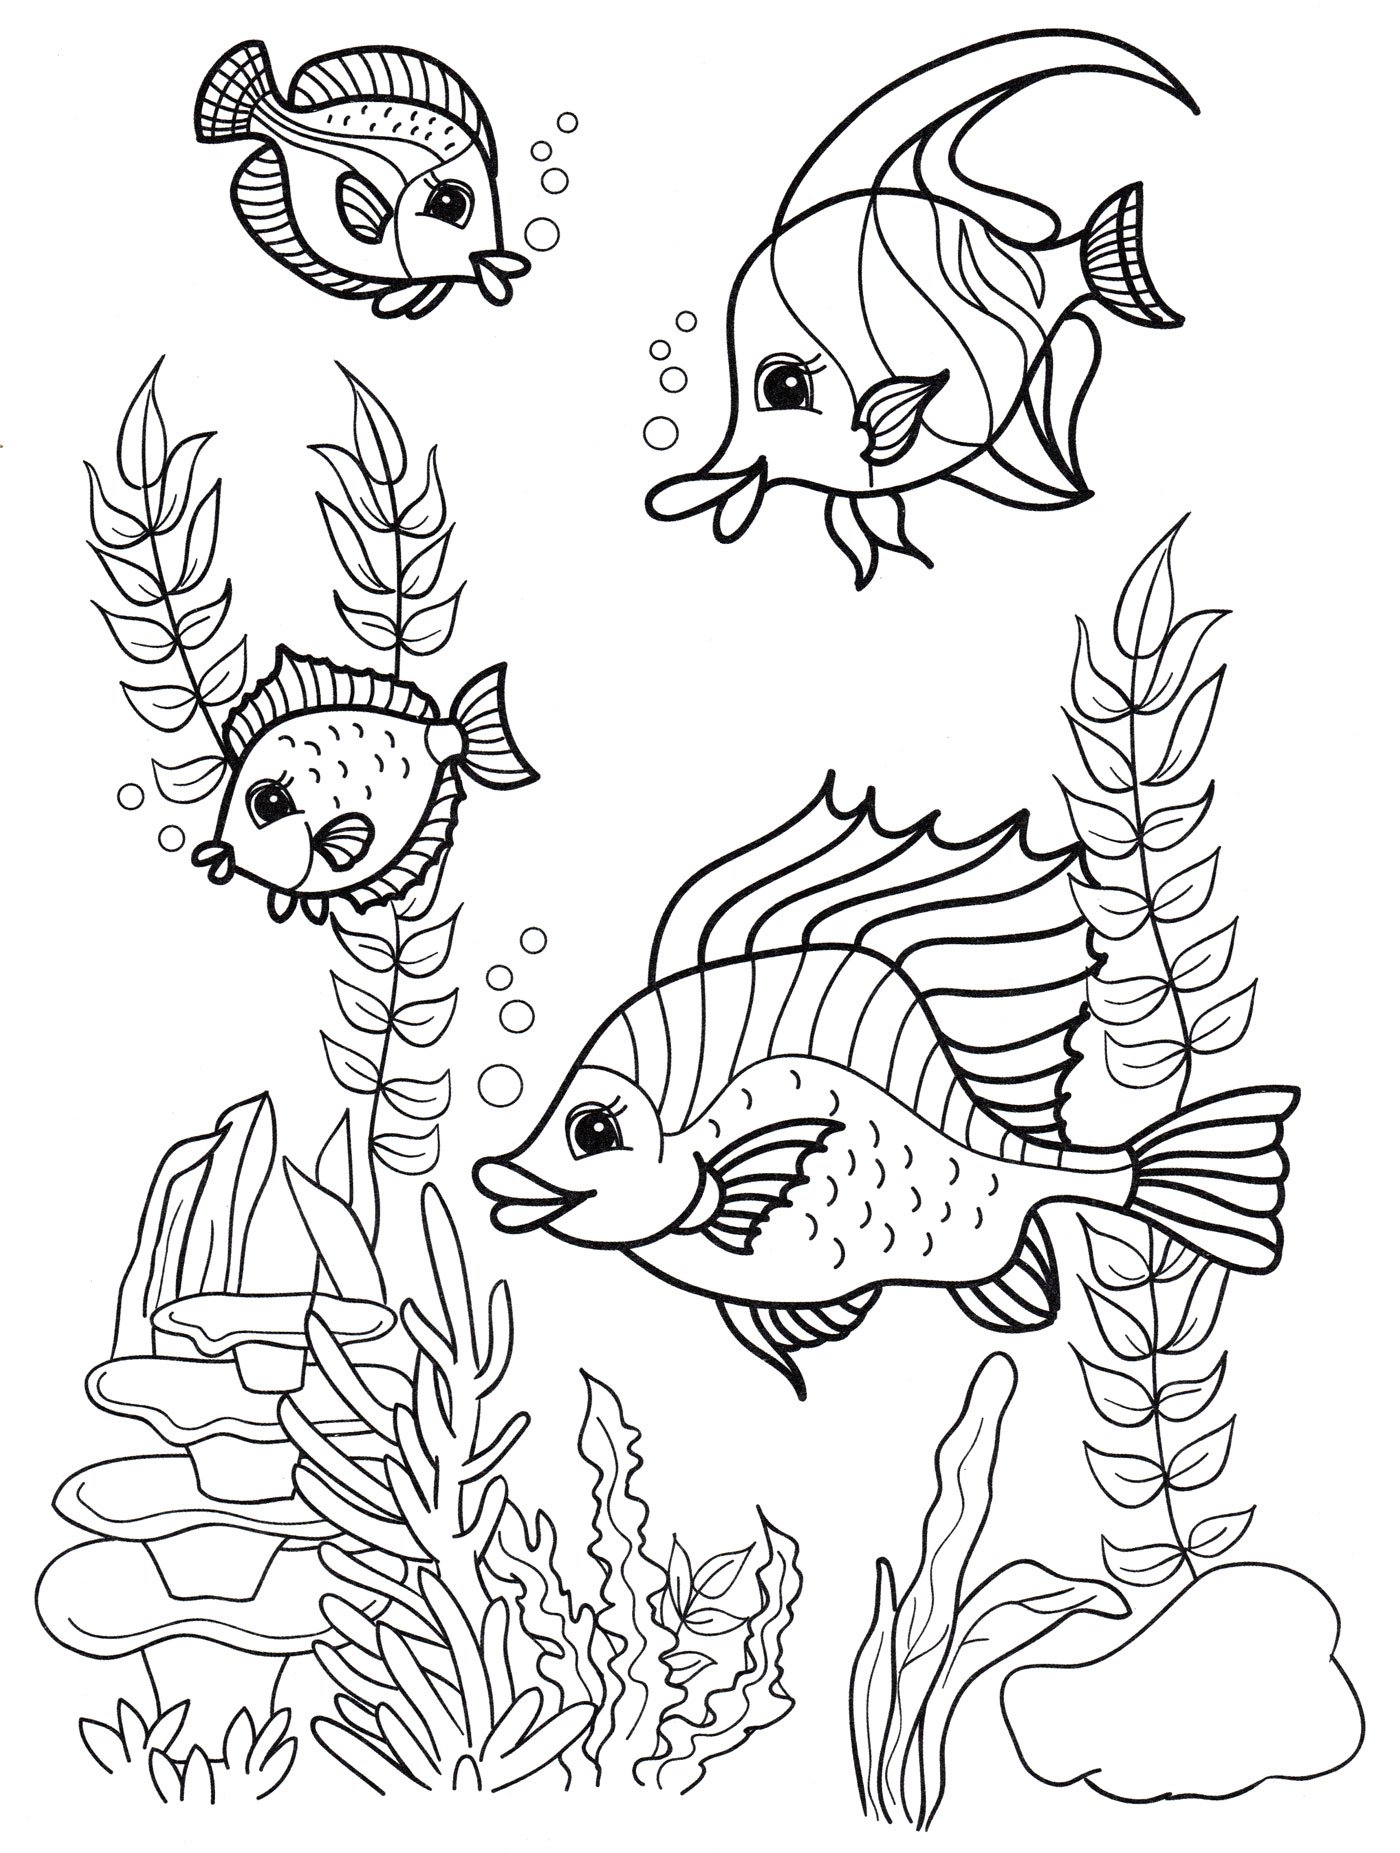 Раскраска Большая рыба, морские водоросли и ракушка: распечатать бесплатно, скачать